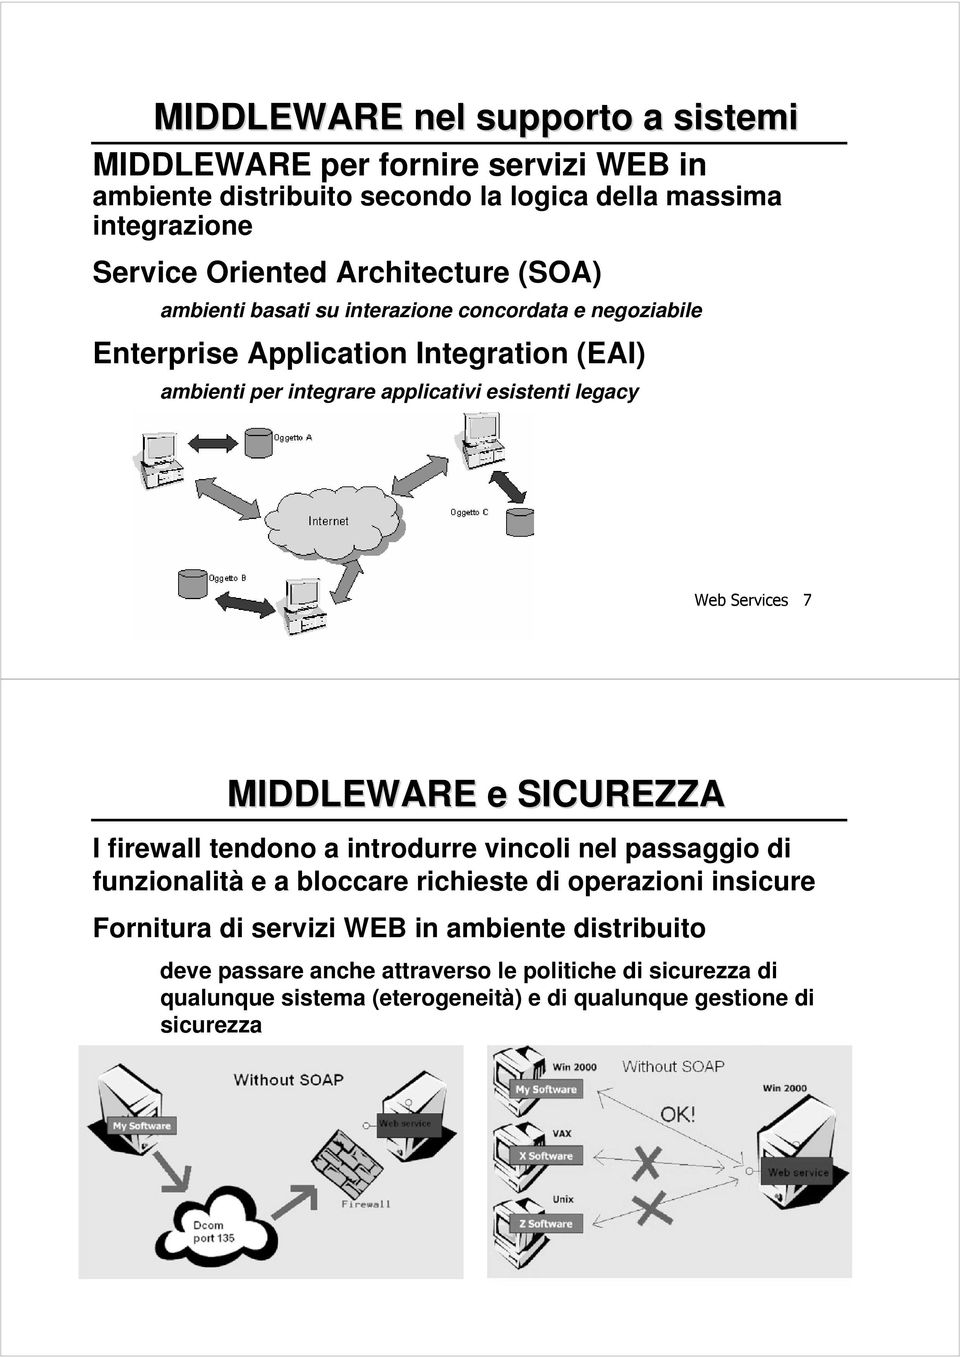 7 MIDDLEWARE e SICUREZZA I firewall tendono a introdurre vincoli nel passaggio di funzionalità e a bloccare richieste di operazioni insicure Fornitura di servizi WEB